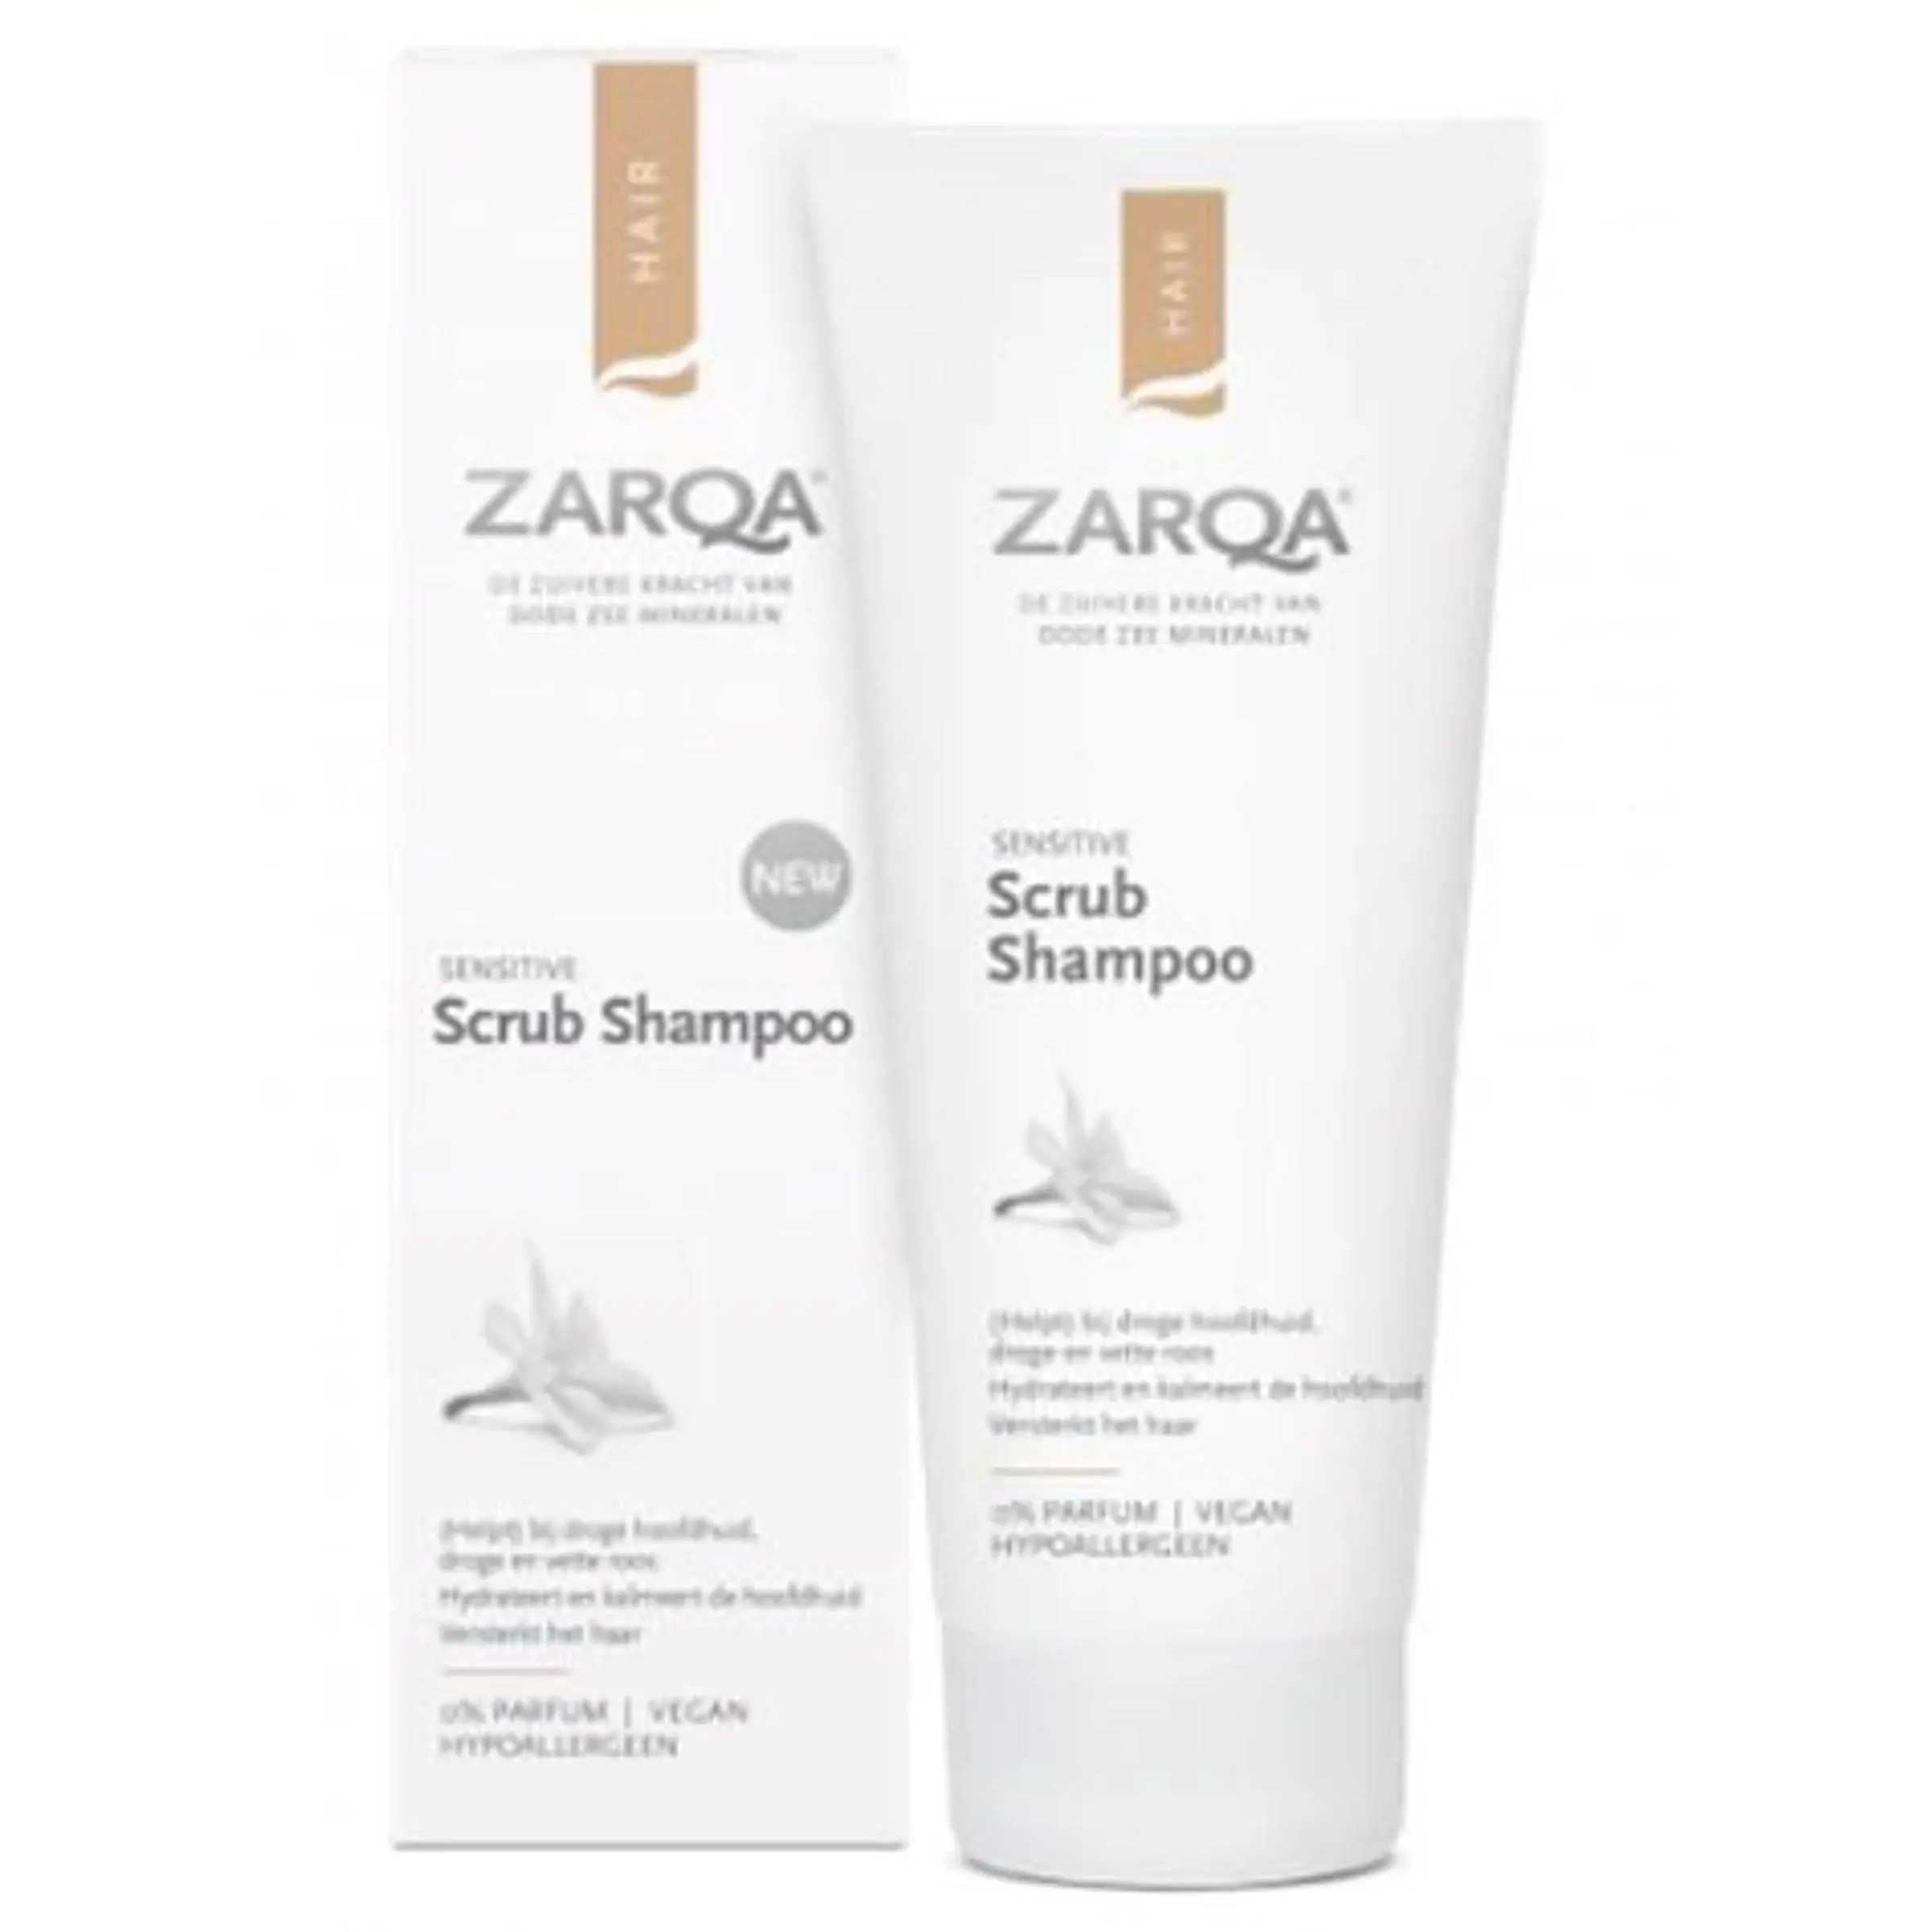 Zarqa Sensitive Scrub Shampoo - 200 ml